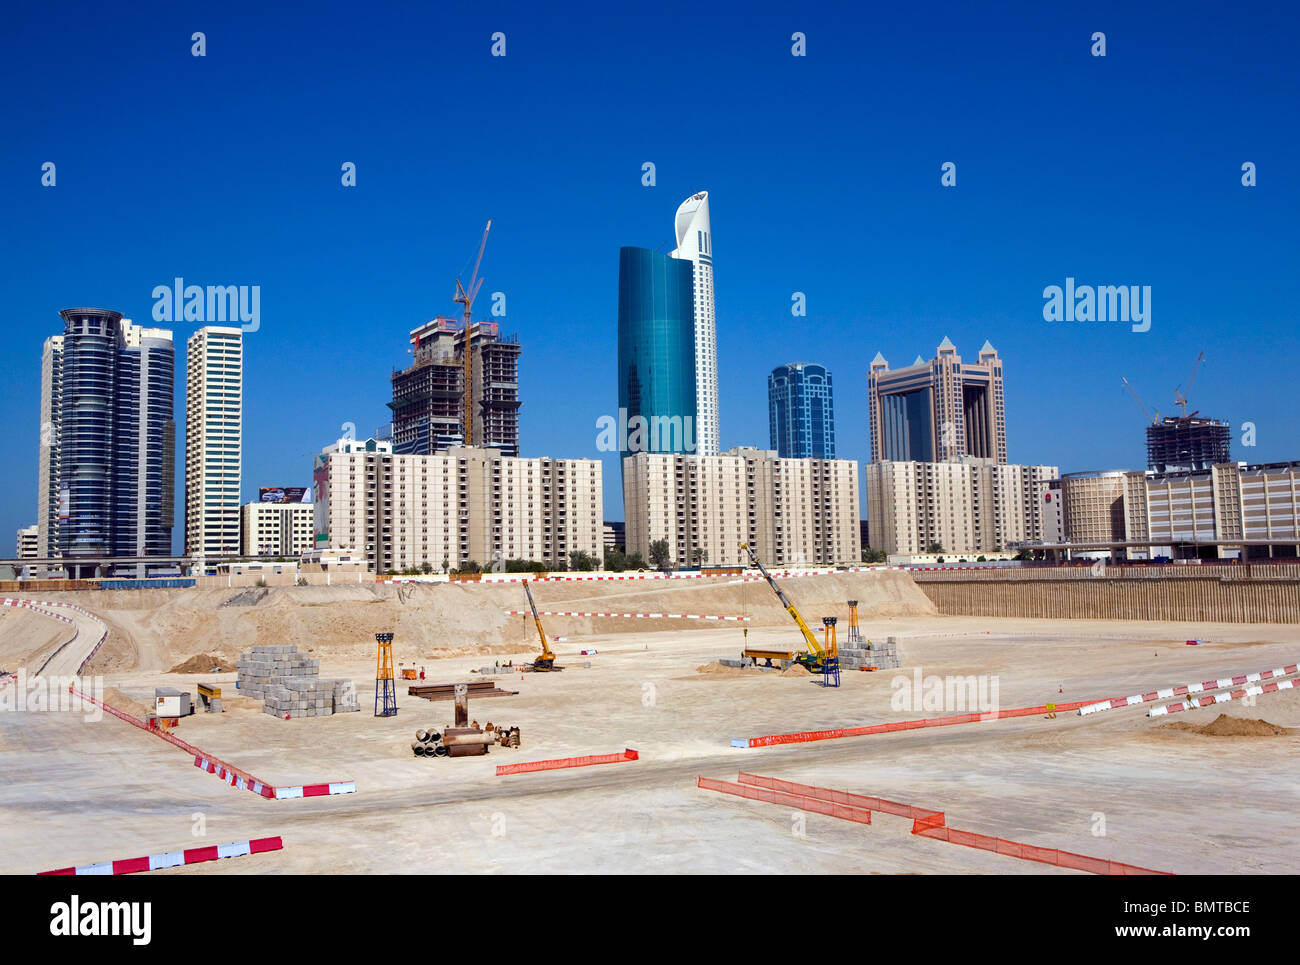 United Arab Emirates, Dubai, Sheikh Zayed Road. Stock Photo